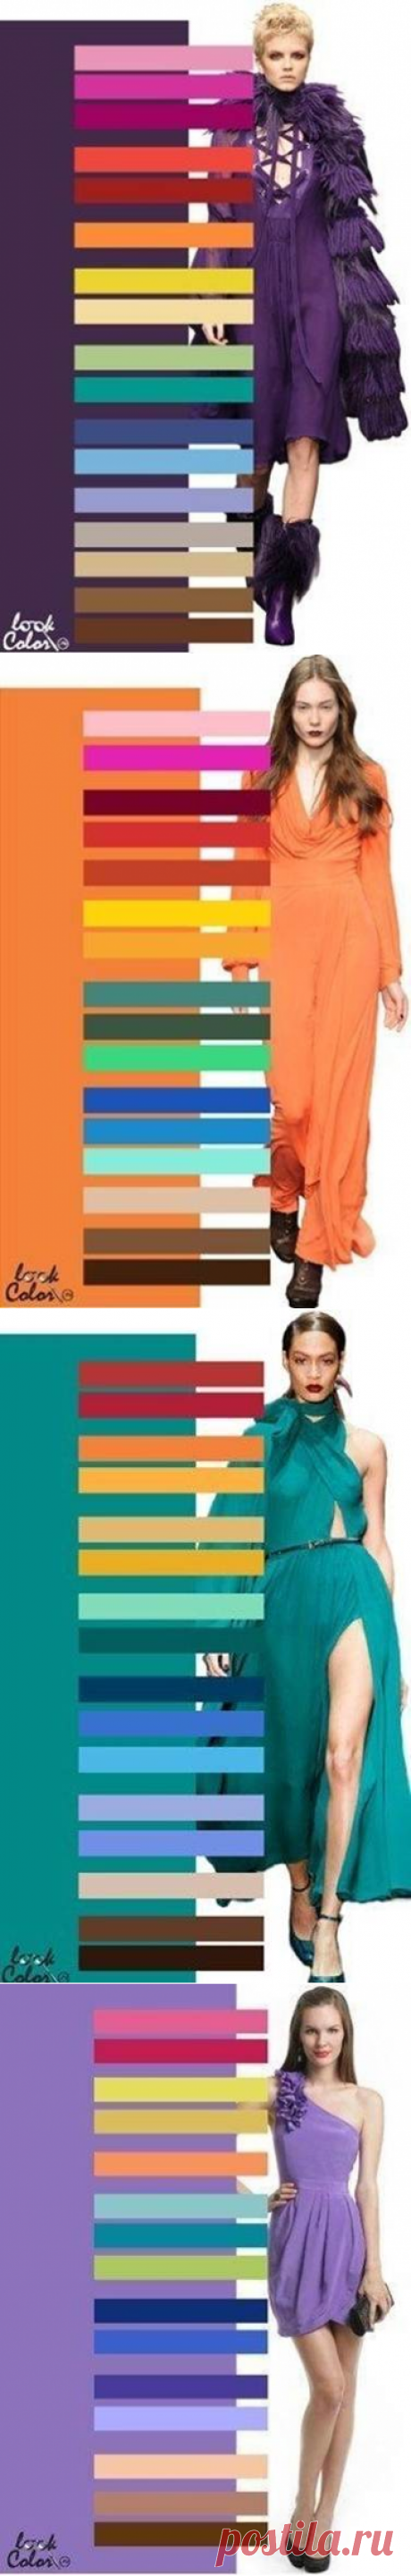 Лучшие цветовые сочетания в одежде - Glamly.ru - сайт о моде и стиле